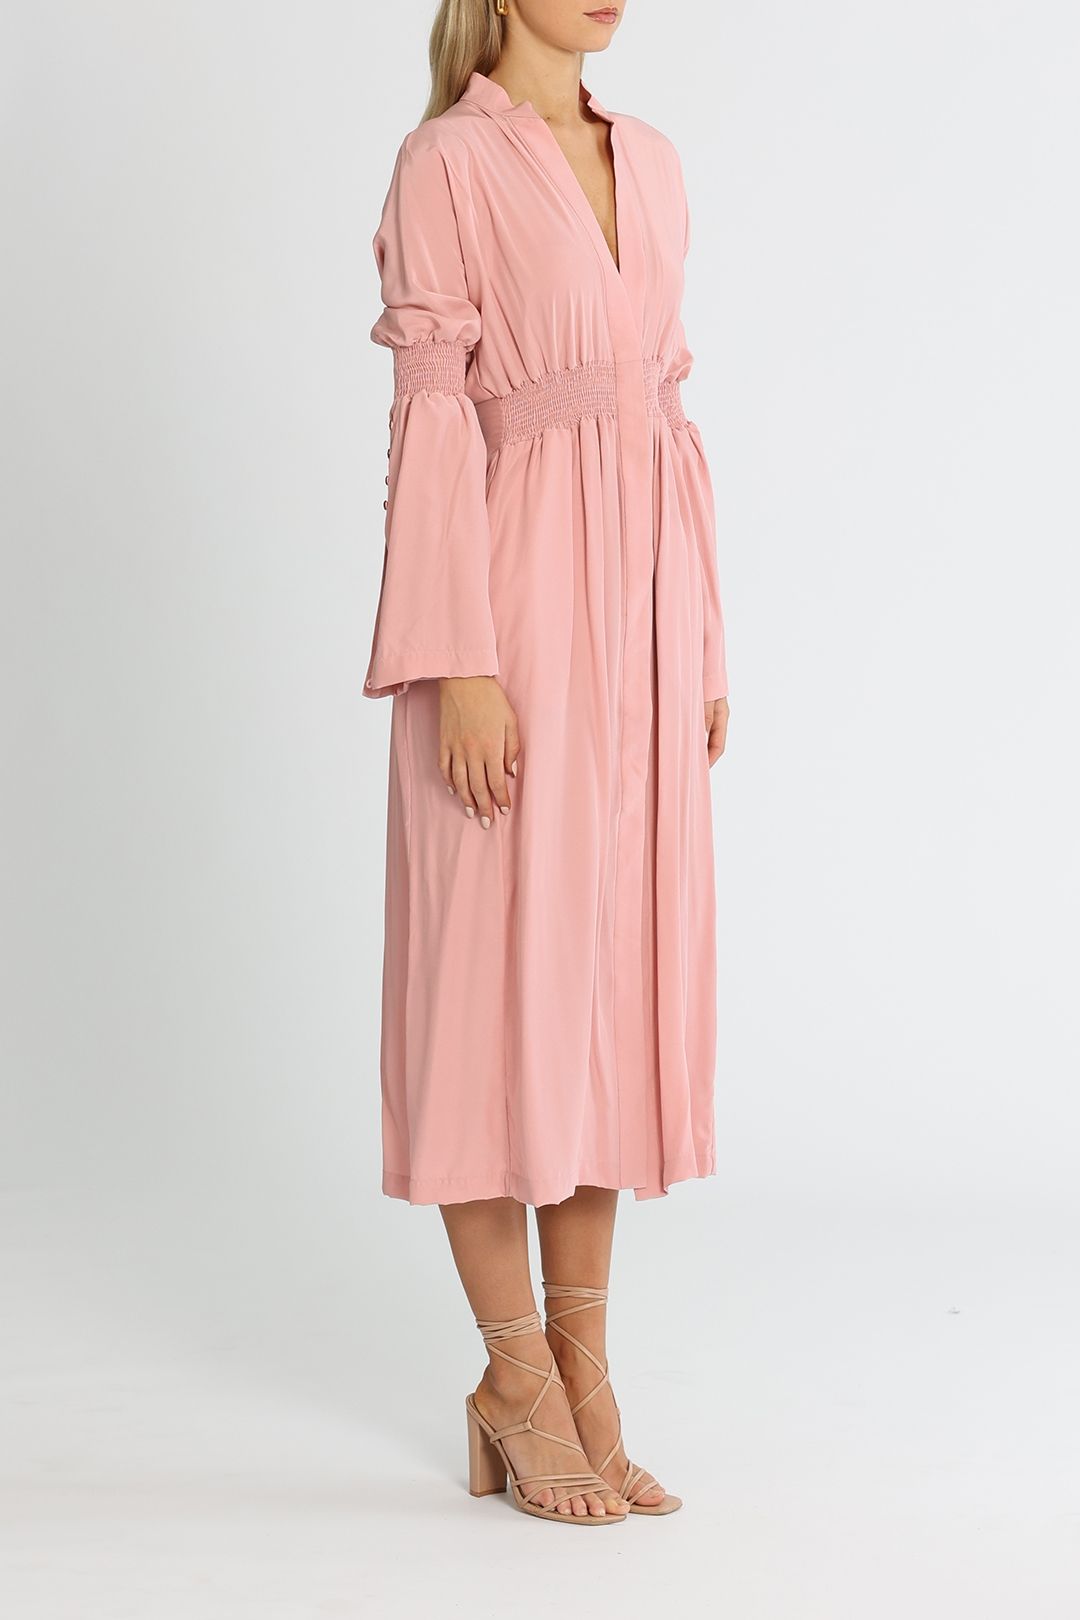 KITX Shirred Dress Pink V Neckline